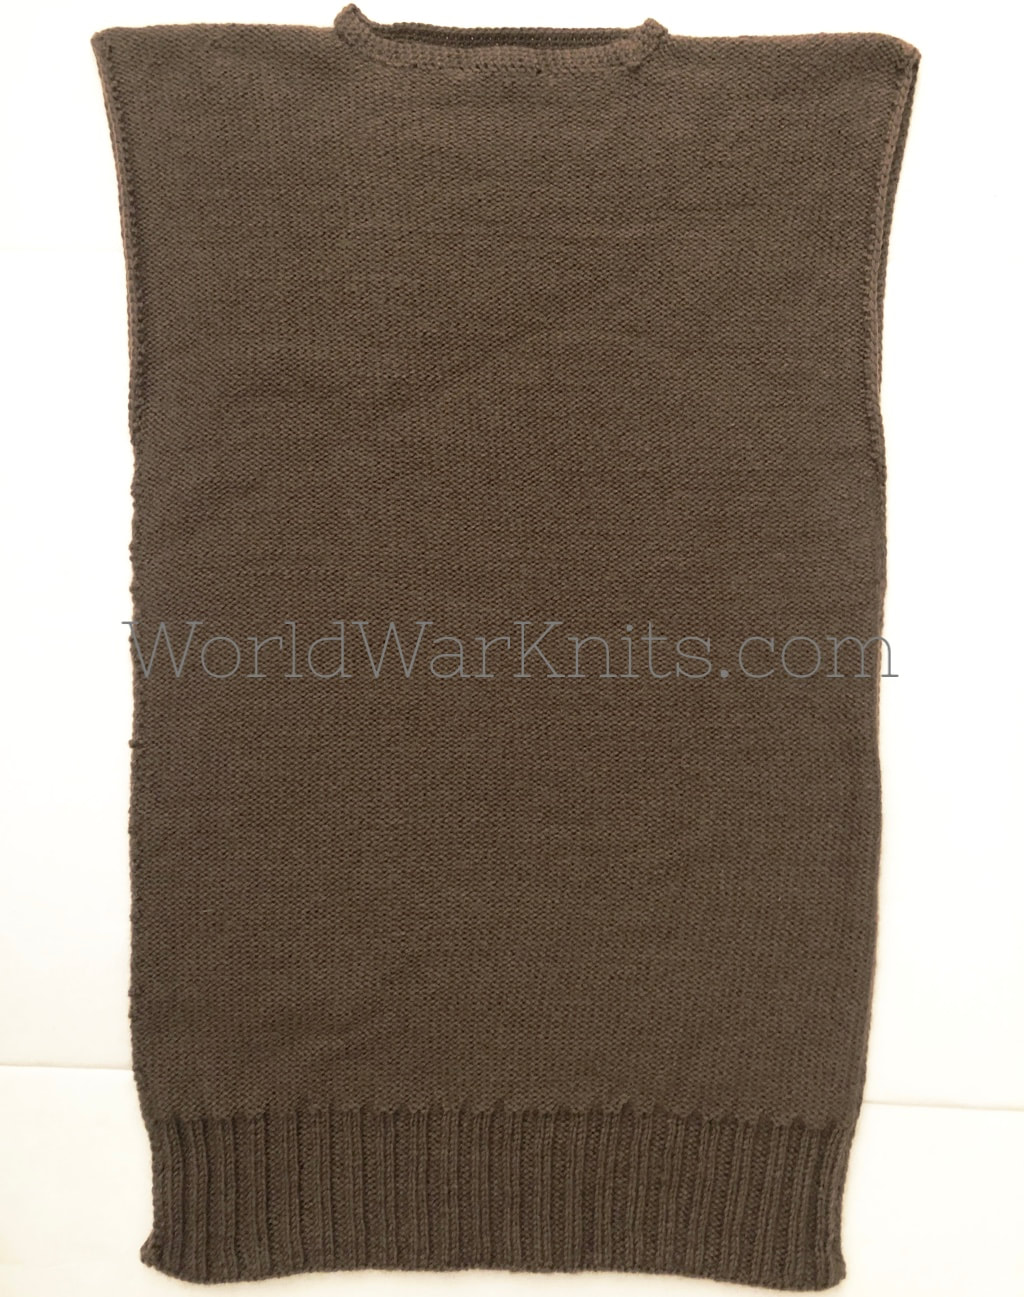 WWI Great War singlet vest. 